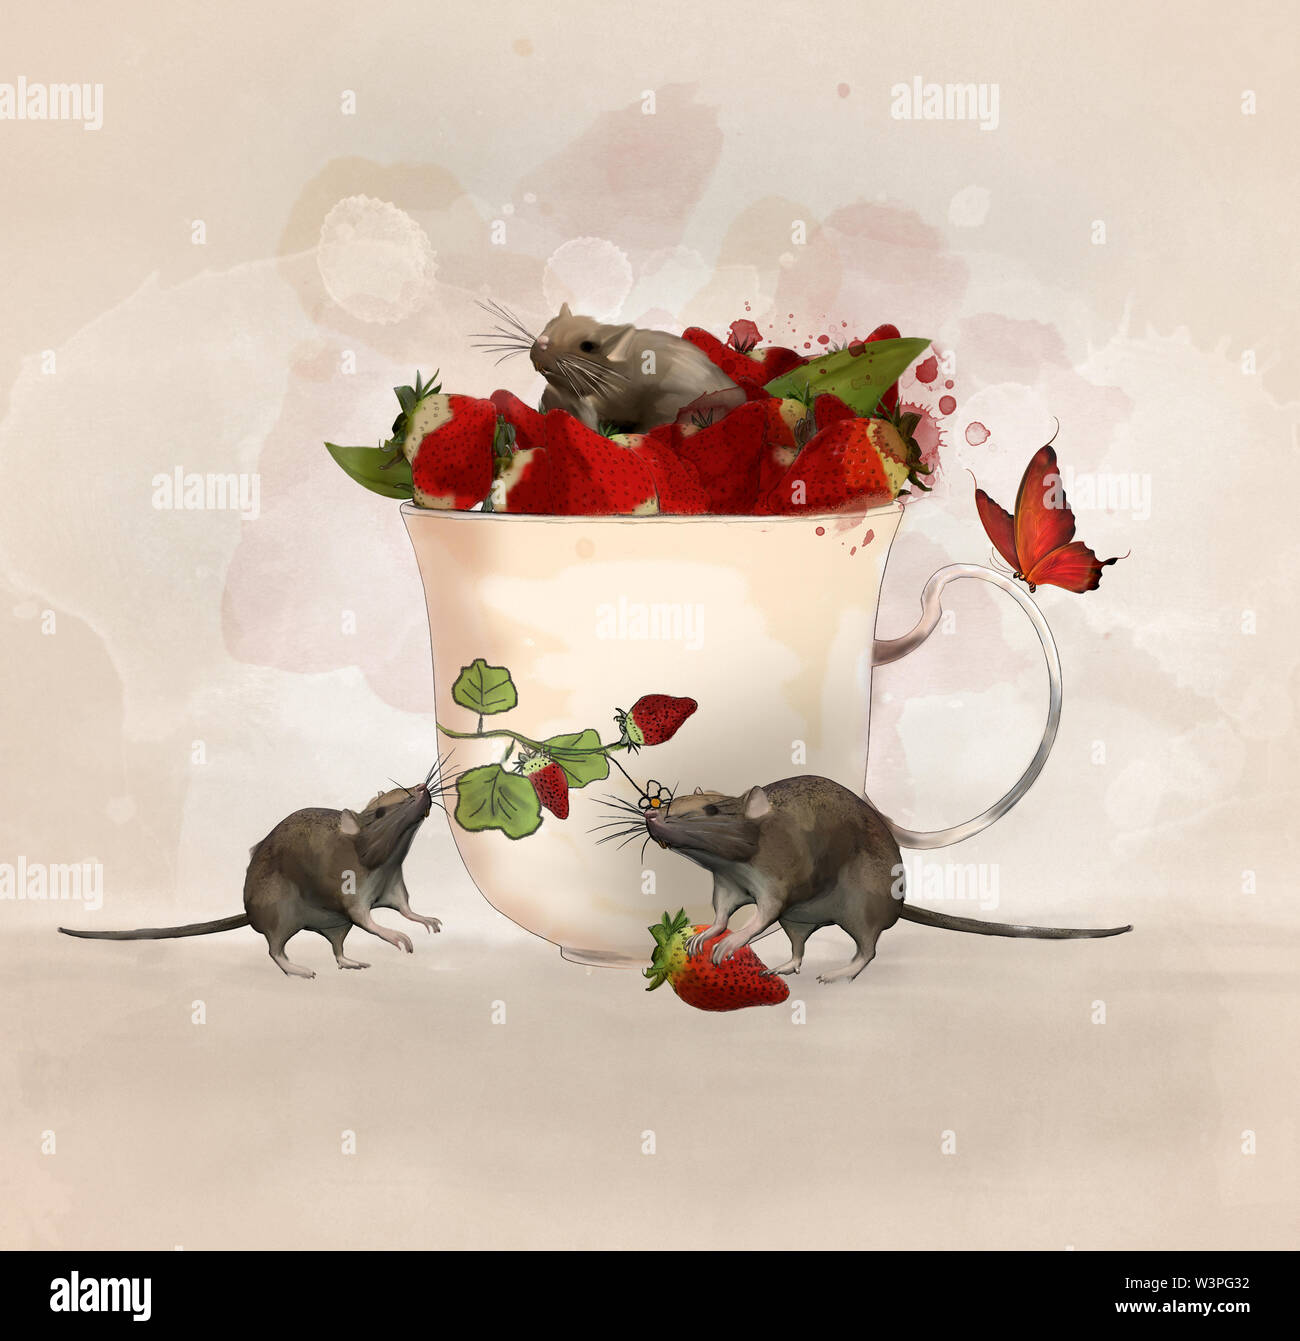 Illustration surréaliste avec une tasse de fraises et une jolie souris Banque D'Images